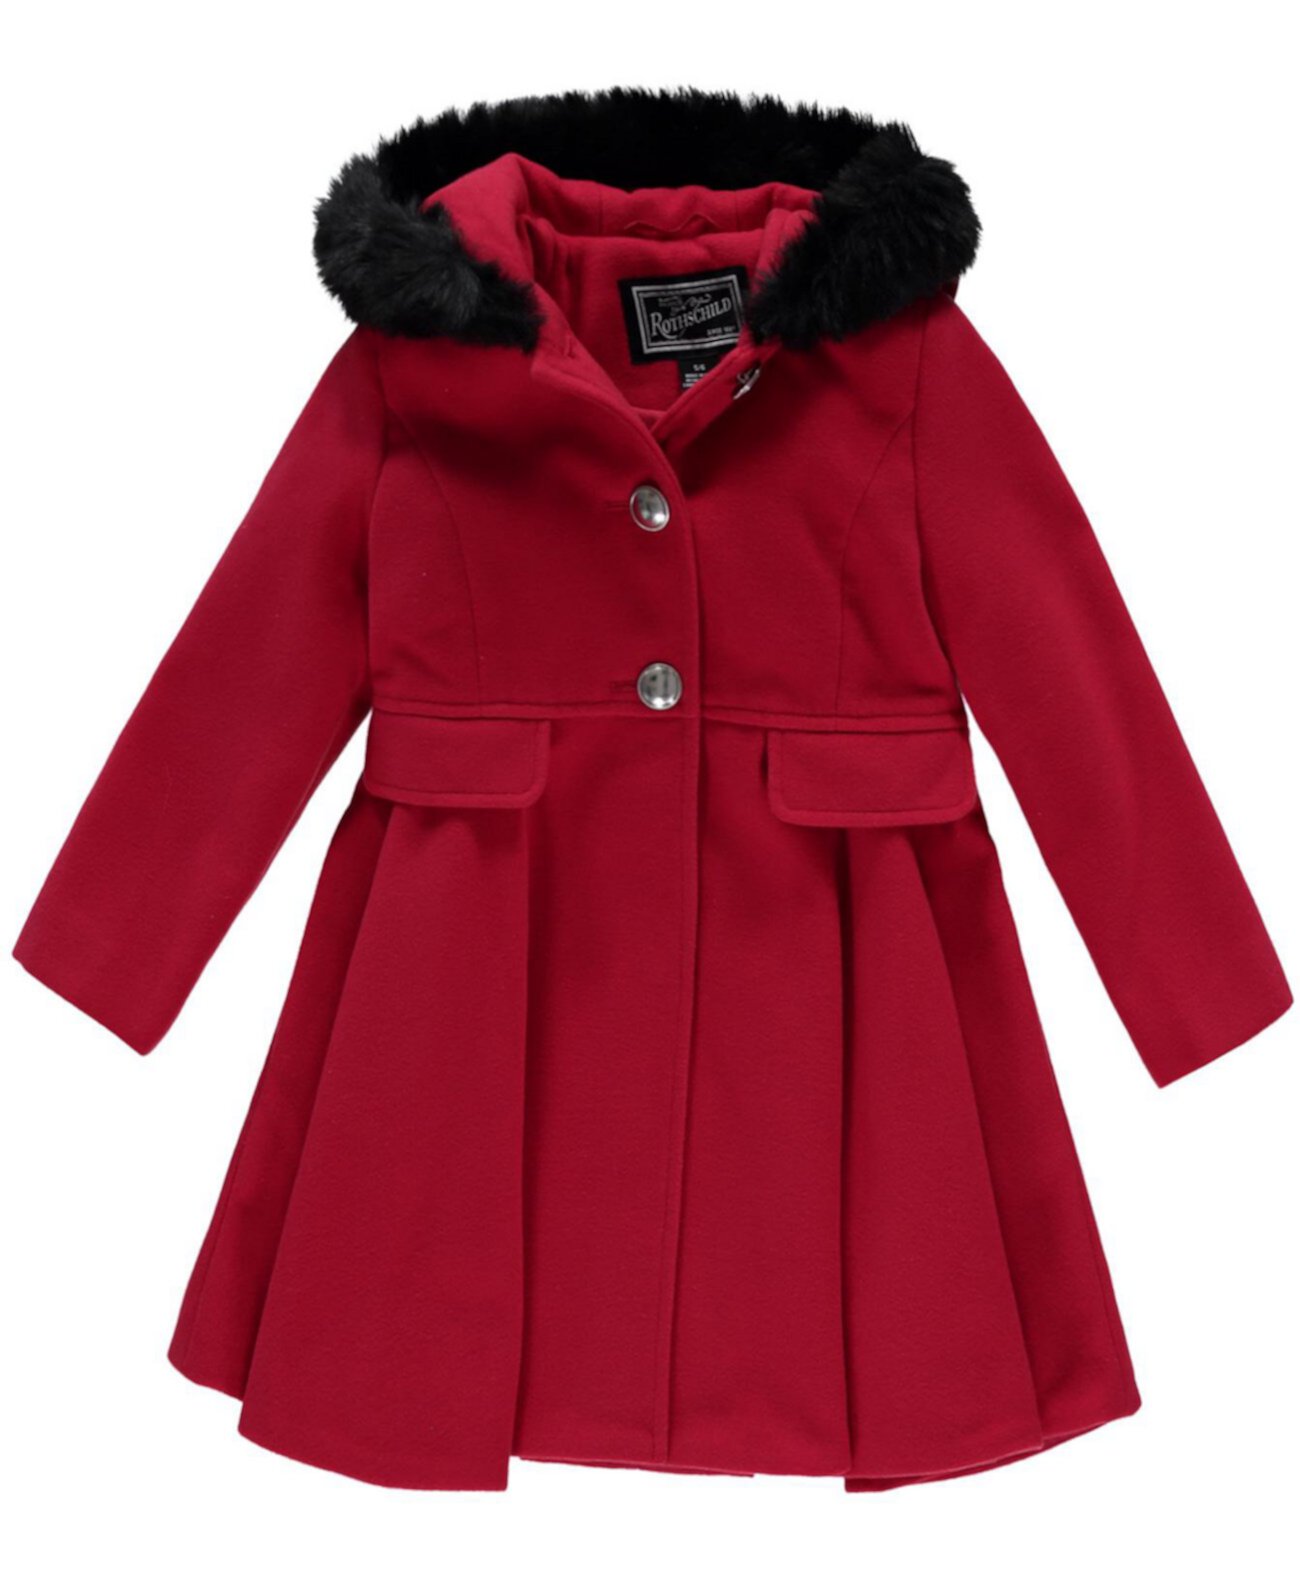 Пальто с капюшоном и отделкой из искусственного меха для девочек Little Girls S Rothschild & CO